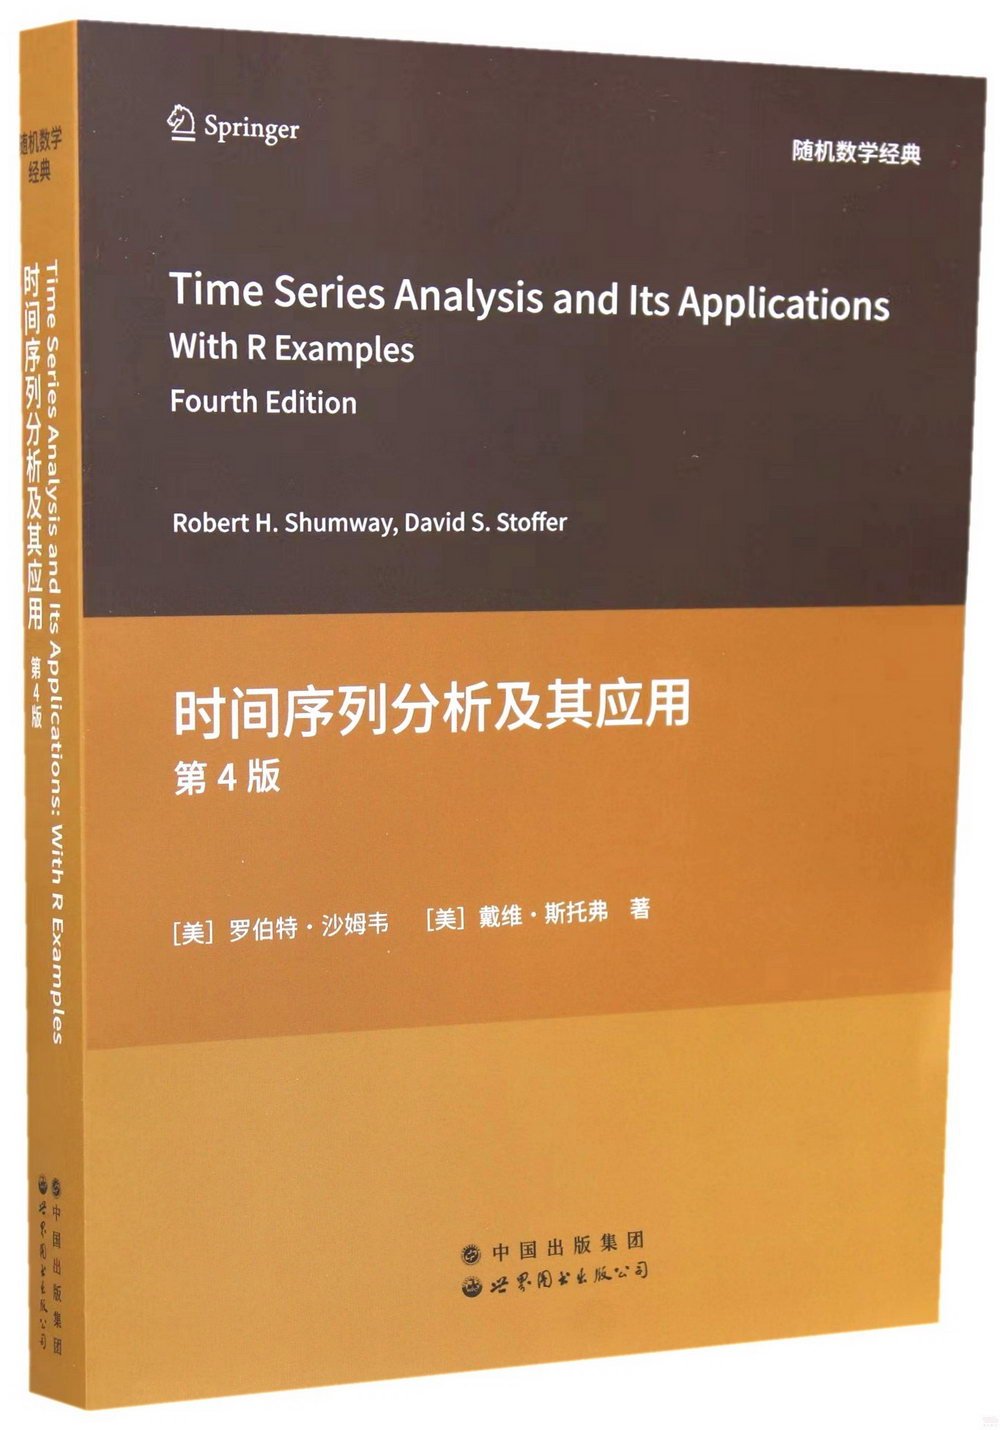 時間序列分析及其應用(第4版)(英文)